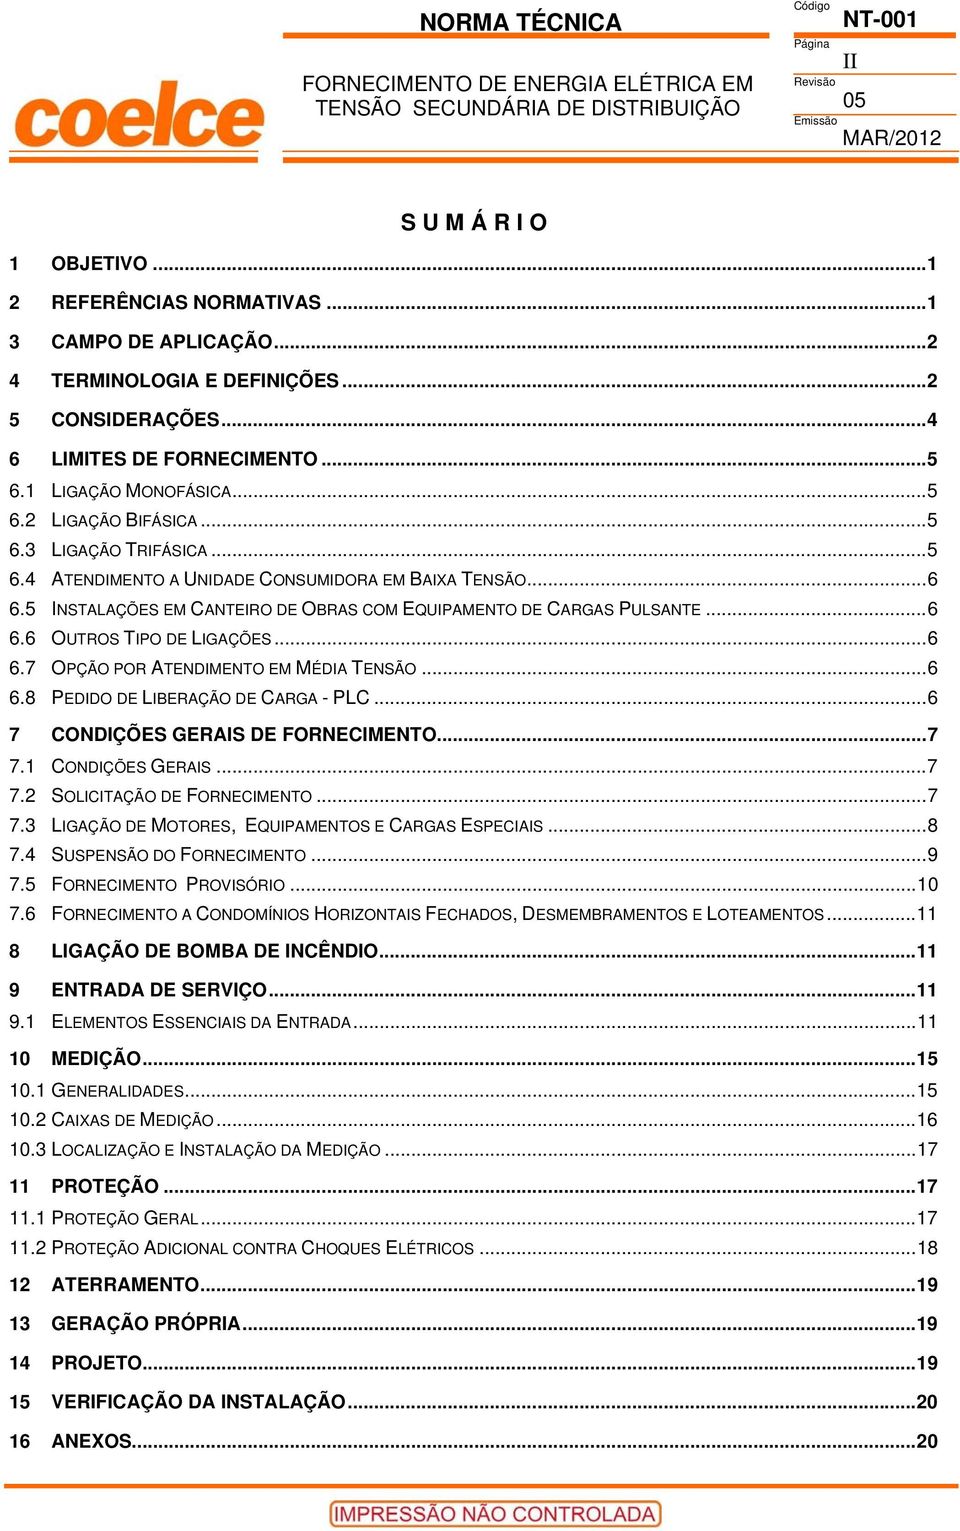 5 INSTALAÇÕES EM CANTEIRO DE OBRAS COM EQUIPAMENTO DE CARGAS PULSANTE...6 6.6 OUTROS TIPO DE LIGAÇÕES...6 6.7 OPÇÃO POR ATENDIMENTO EM MÉDIA TENSÃO...6 6.8 PEDIDO DE LIBERAÇÃO DE CARGA - PLC.